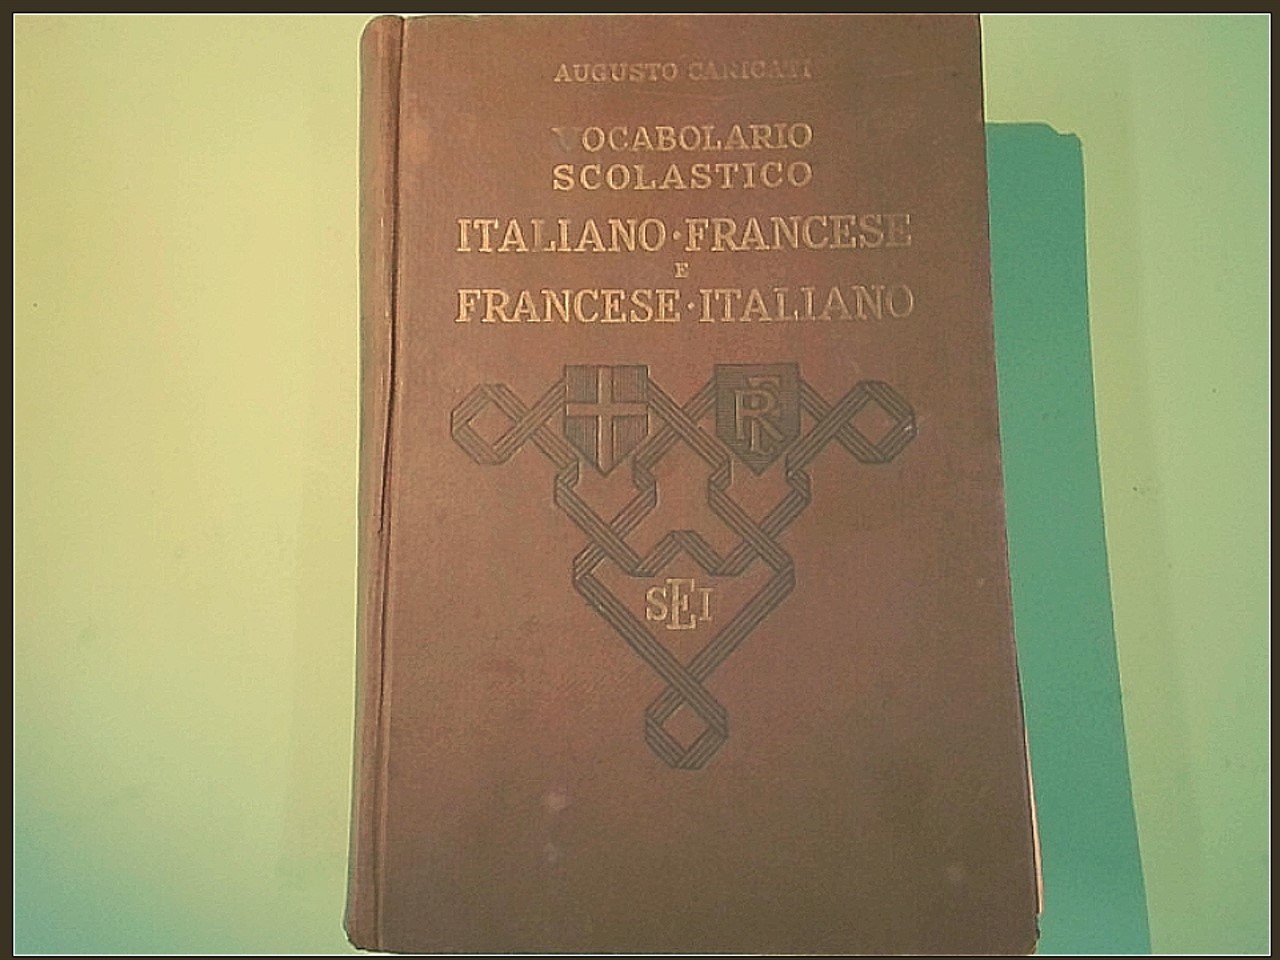 VOCABOLARIO SCOLASTICO ITALIANO FRANCESE FRANCESE ITALIANO